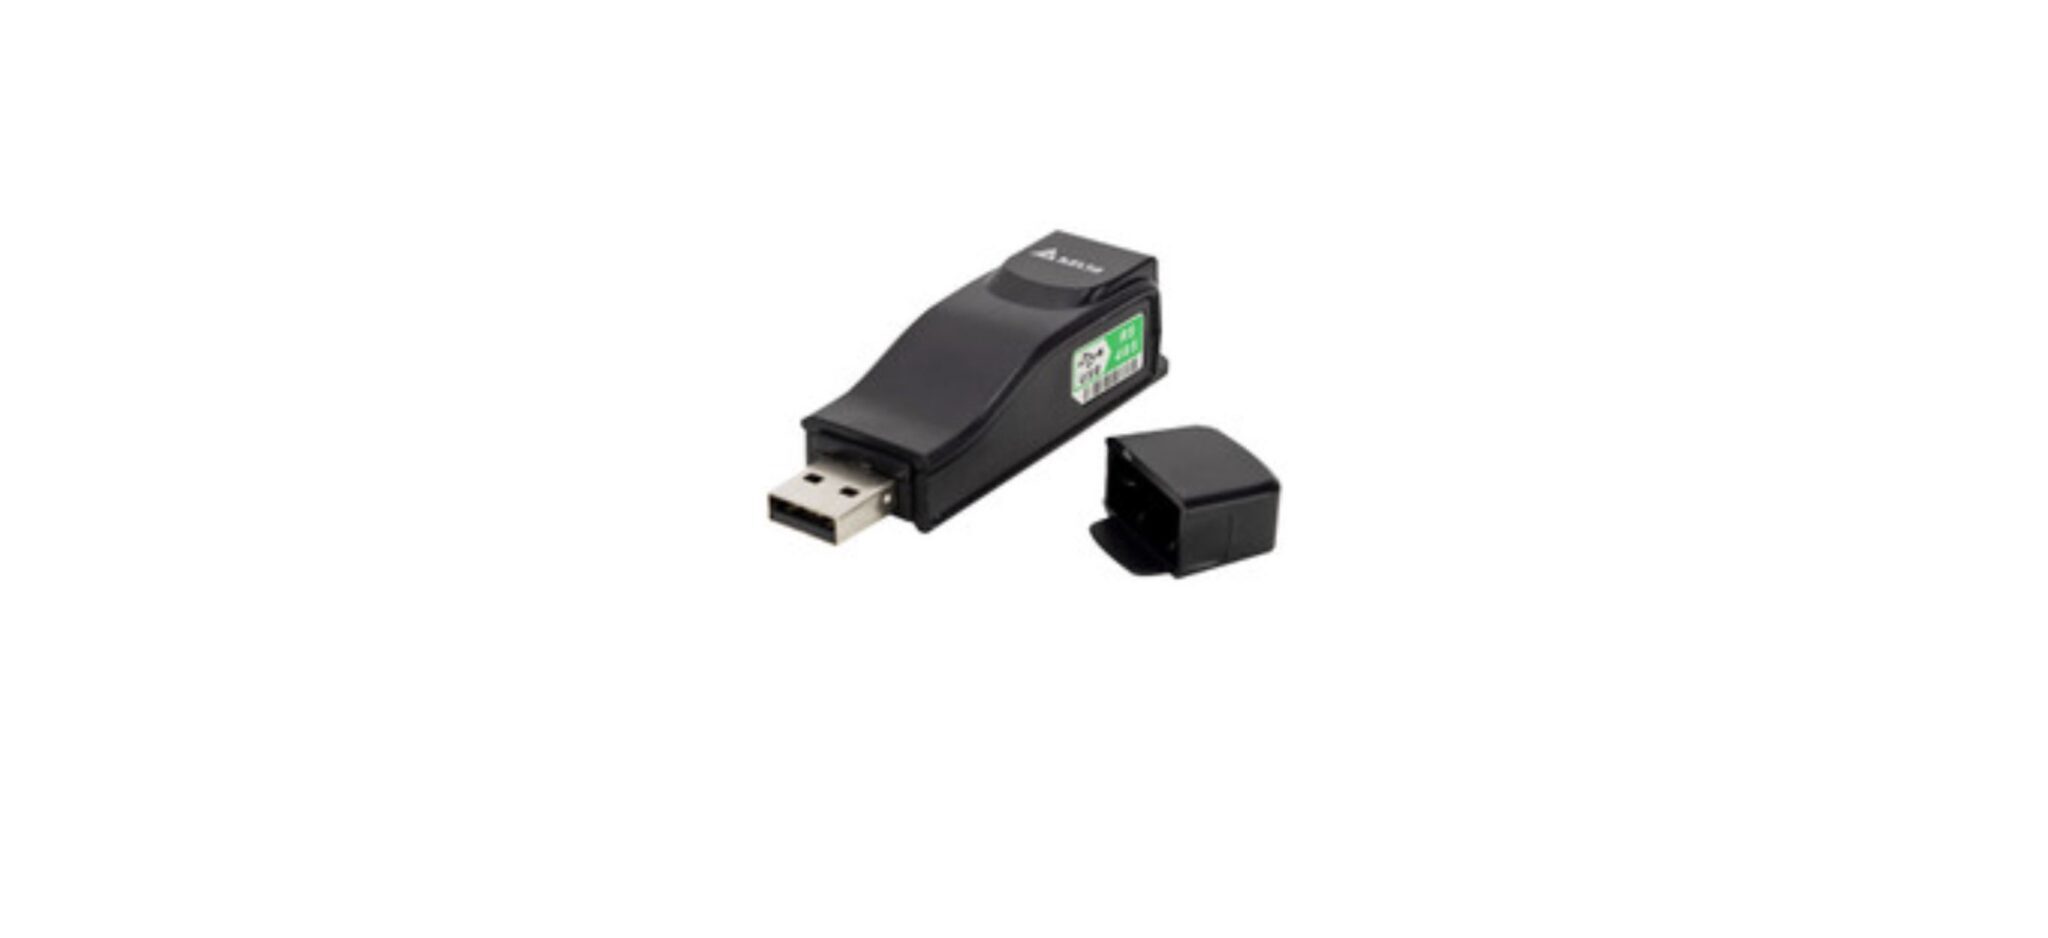 IFD6500, IFD6530 USB/RS-485 Communication Interface